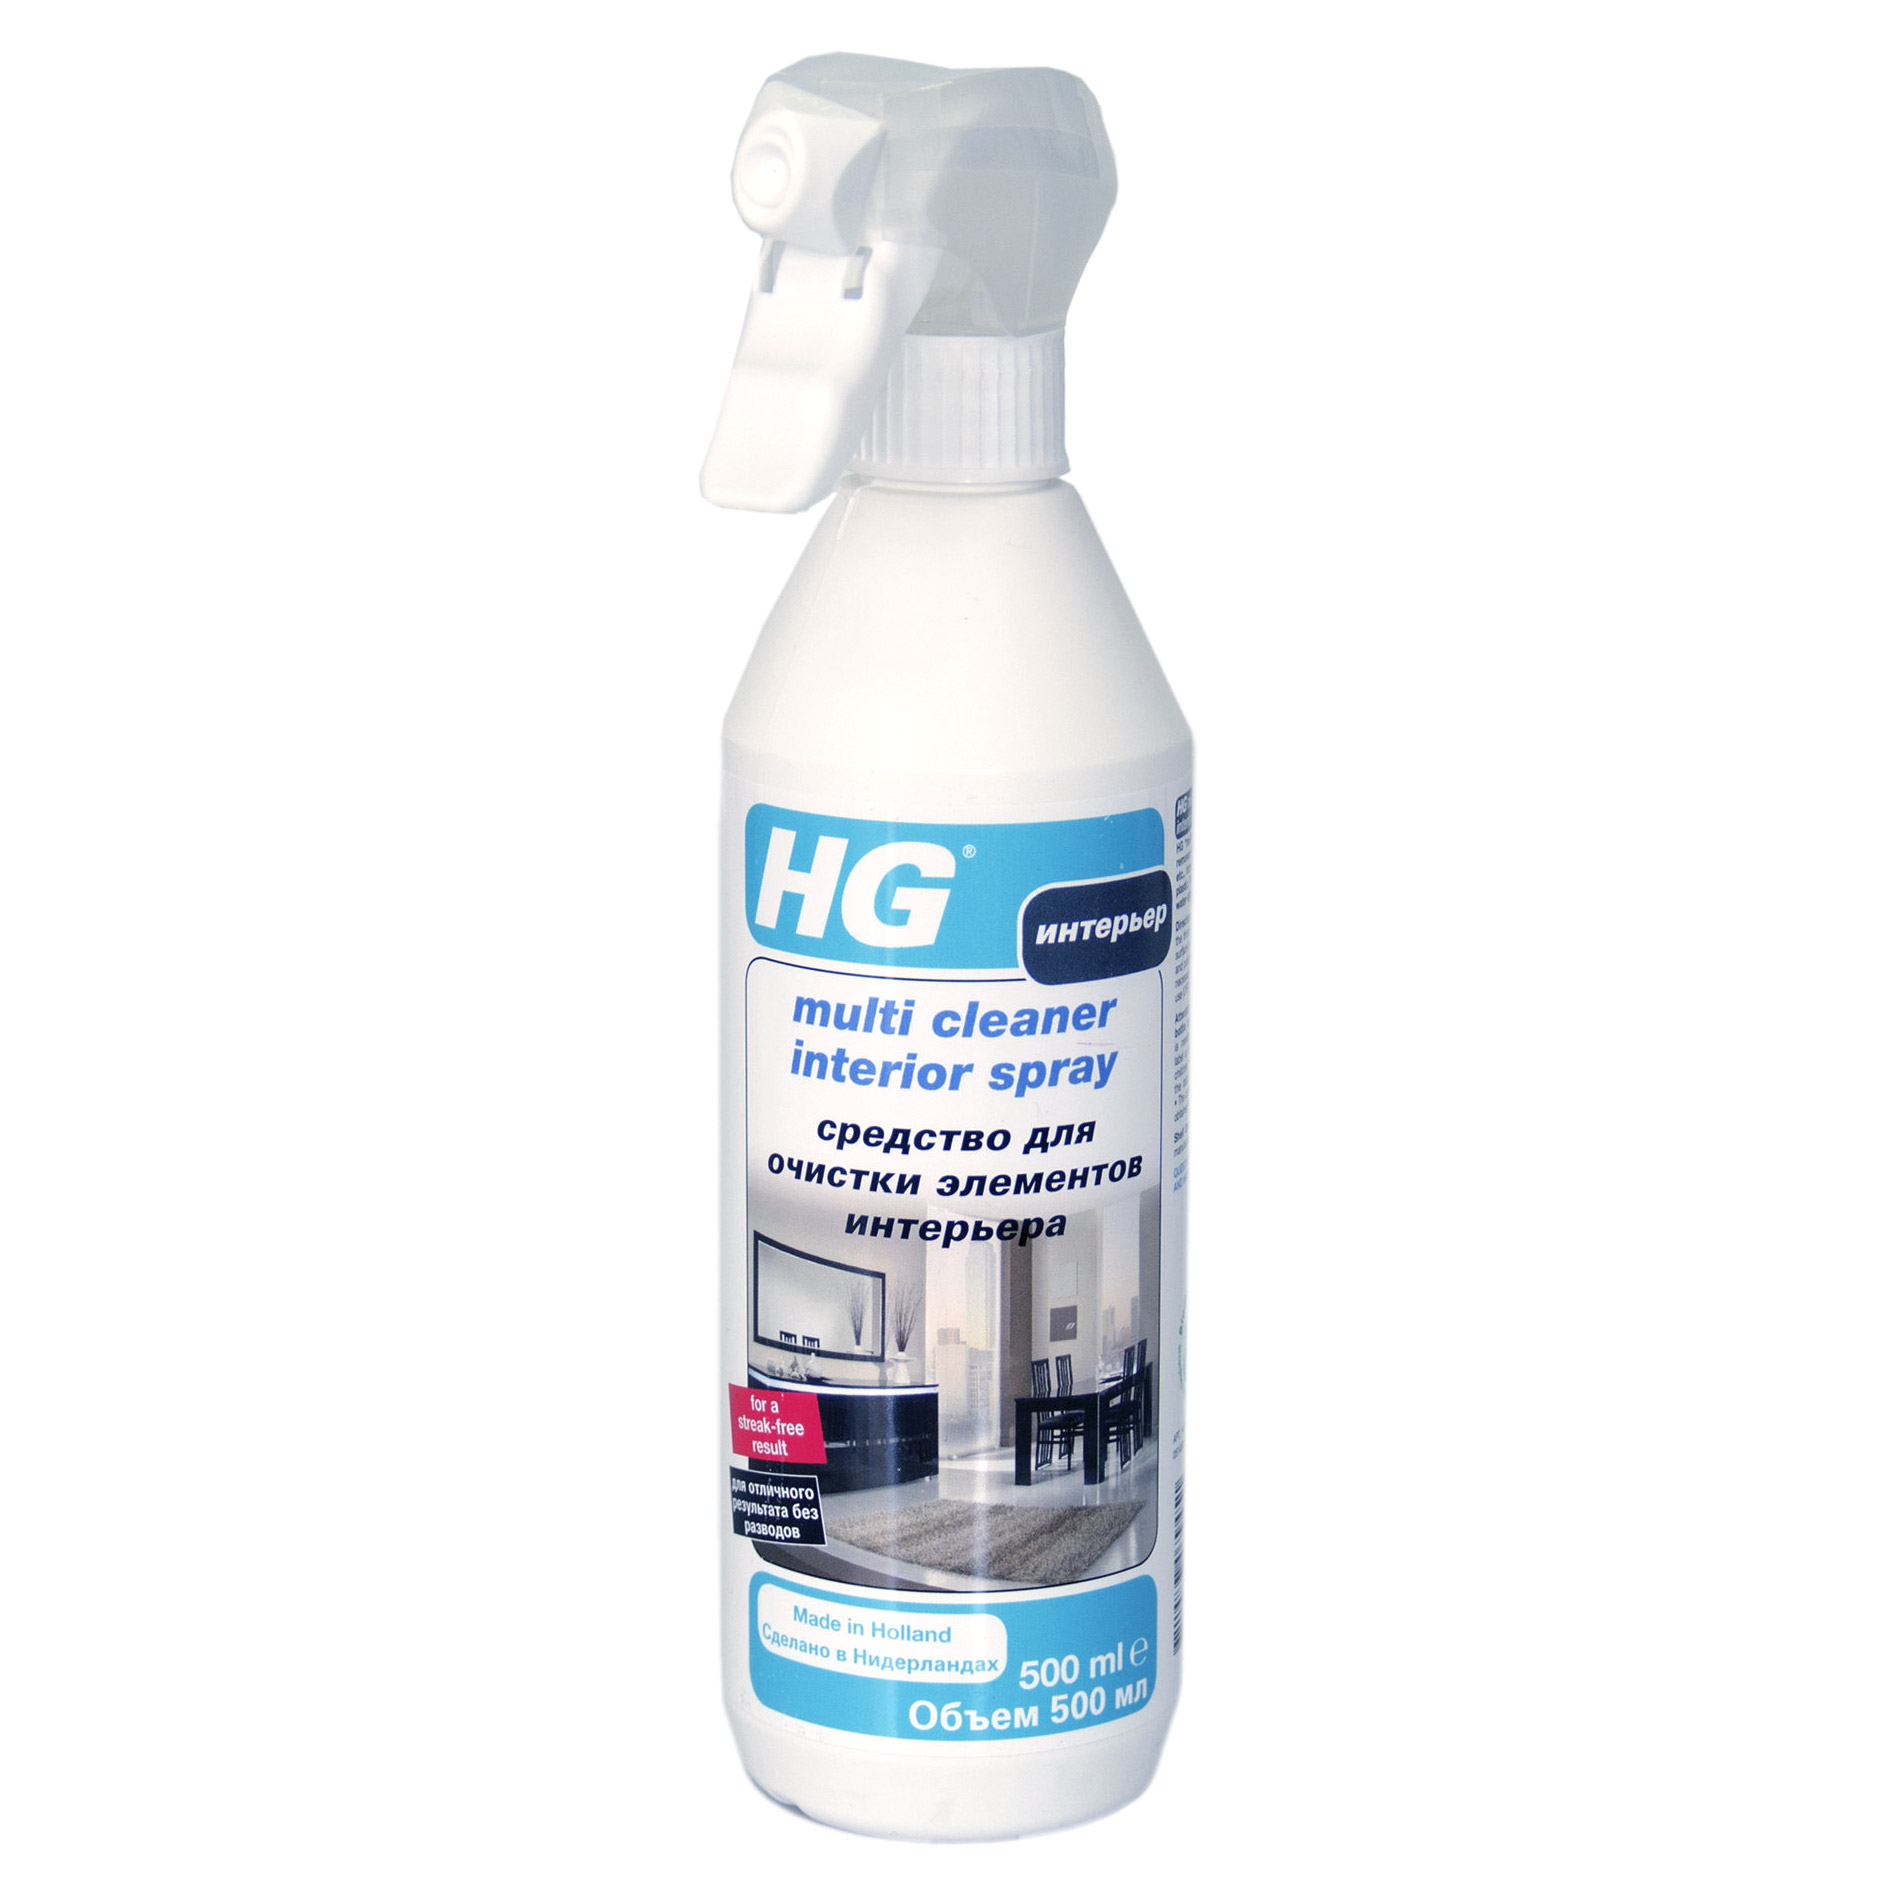 Химические средства очистки. HG Multi Cleaner Interior Spray. HG средство для очистки нержавеющей стали 0,3 л. HG бытовая химия. HG средство для очистки.